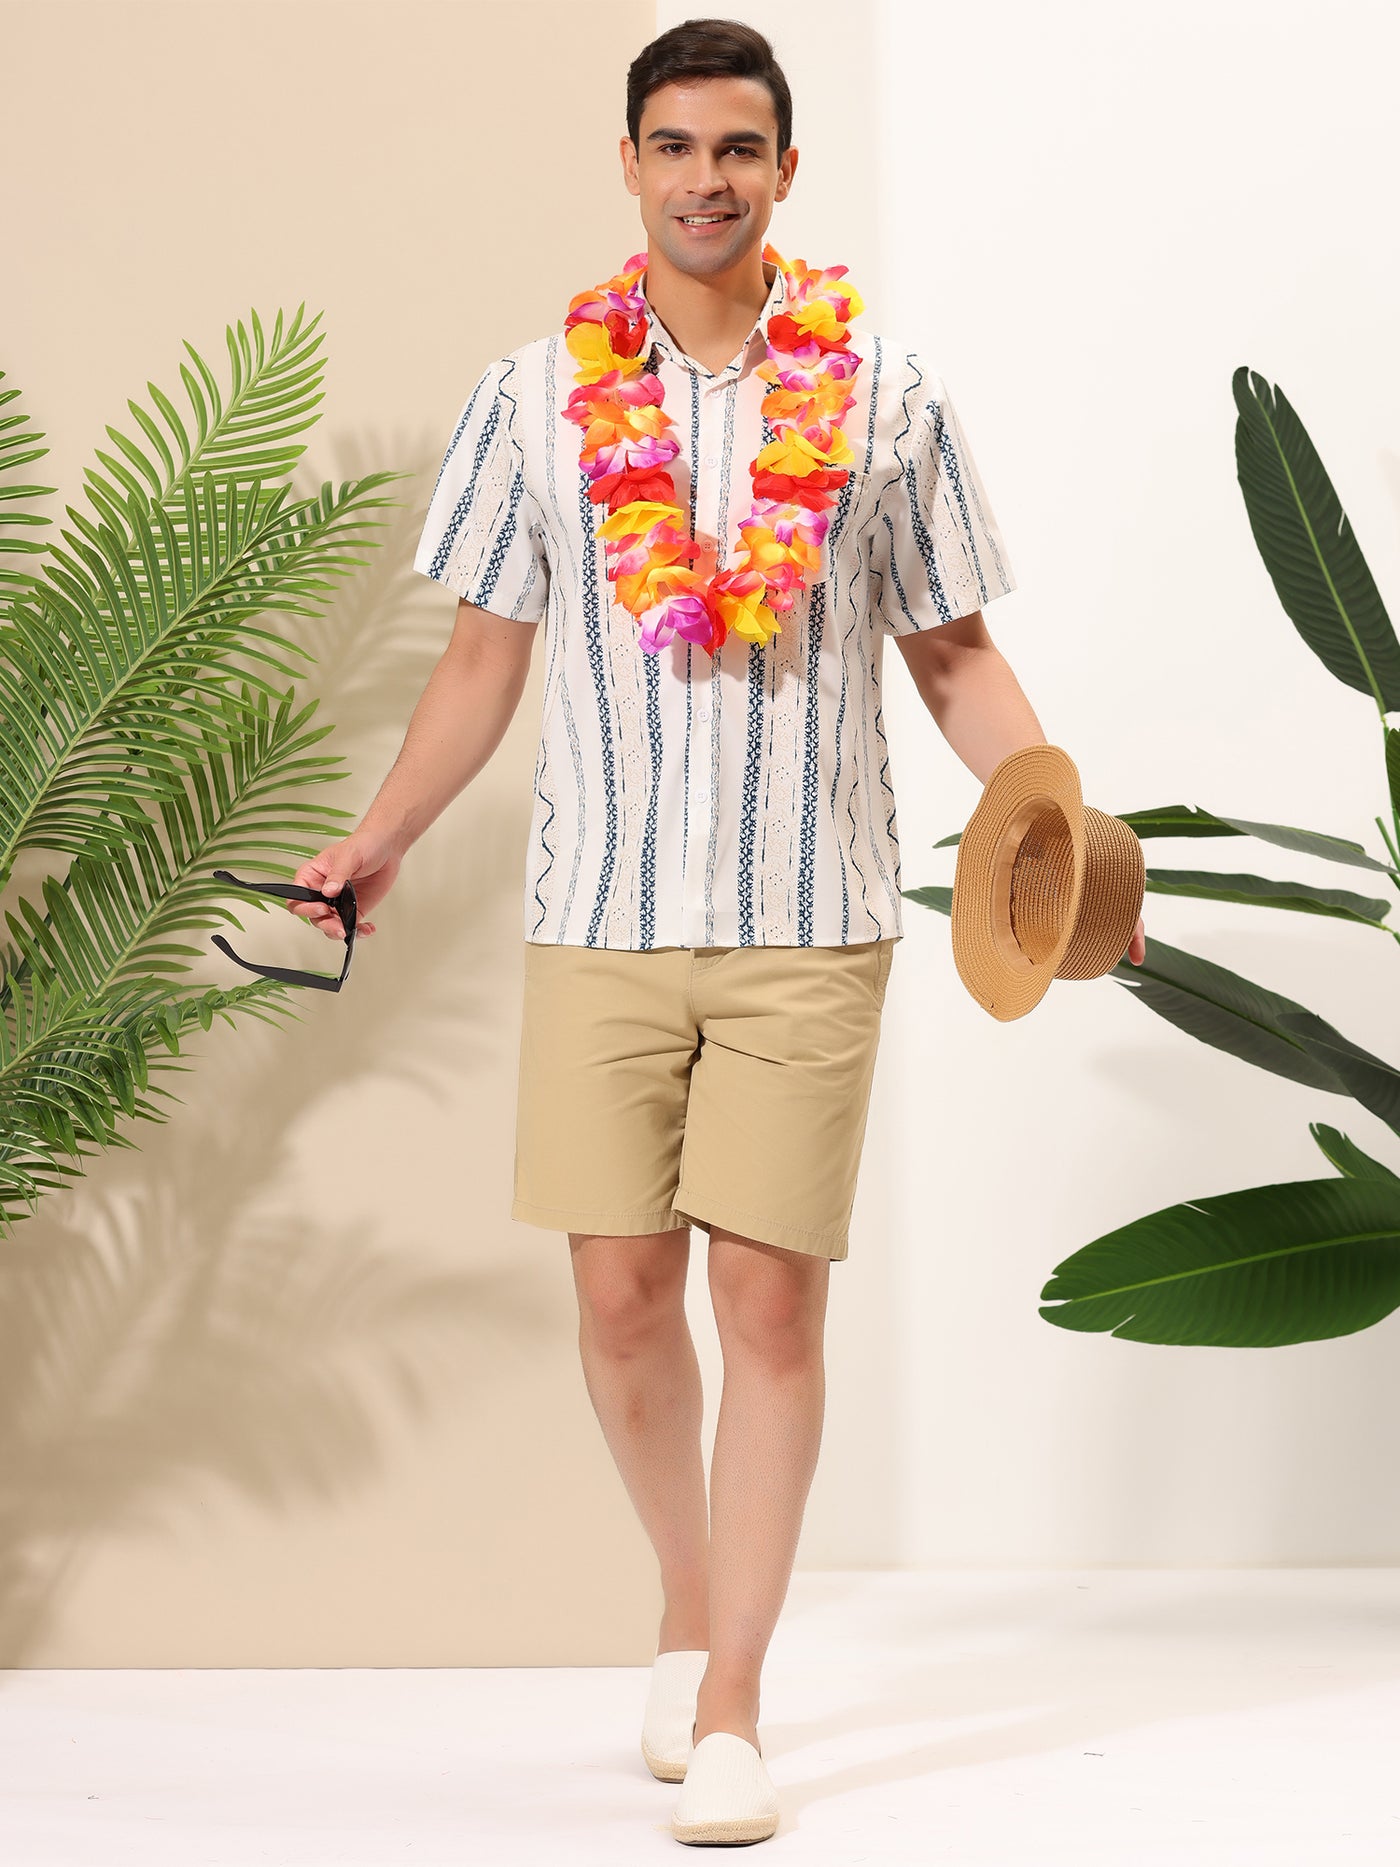 Bublédon Hawaiian Summer Striped Short Sleeve Beach Shirt